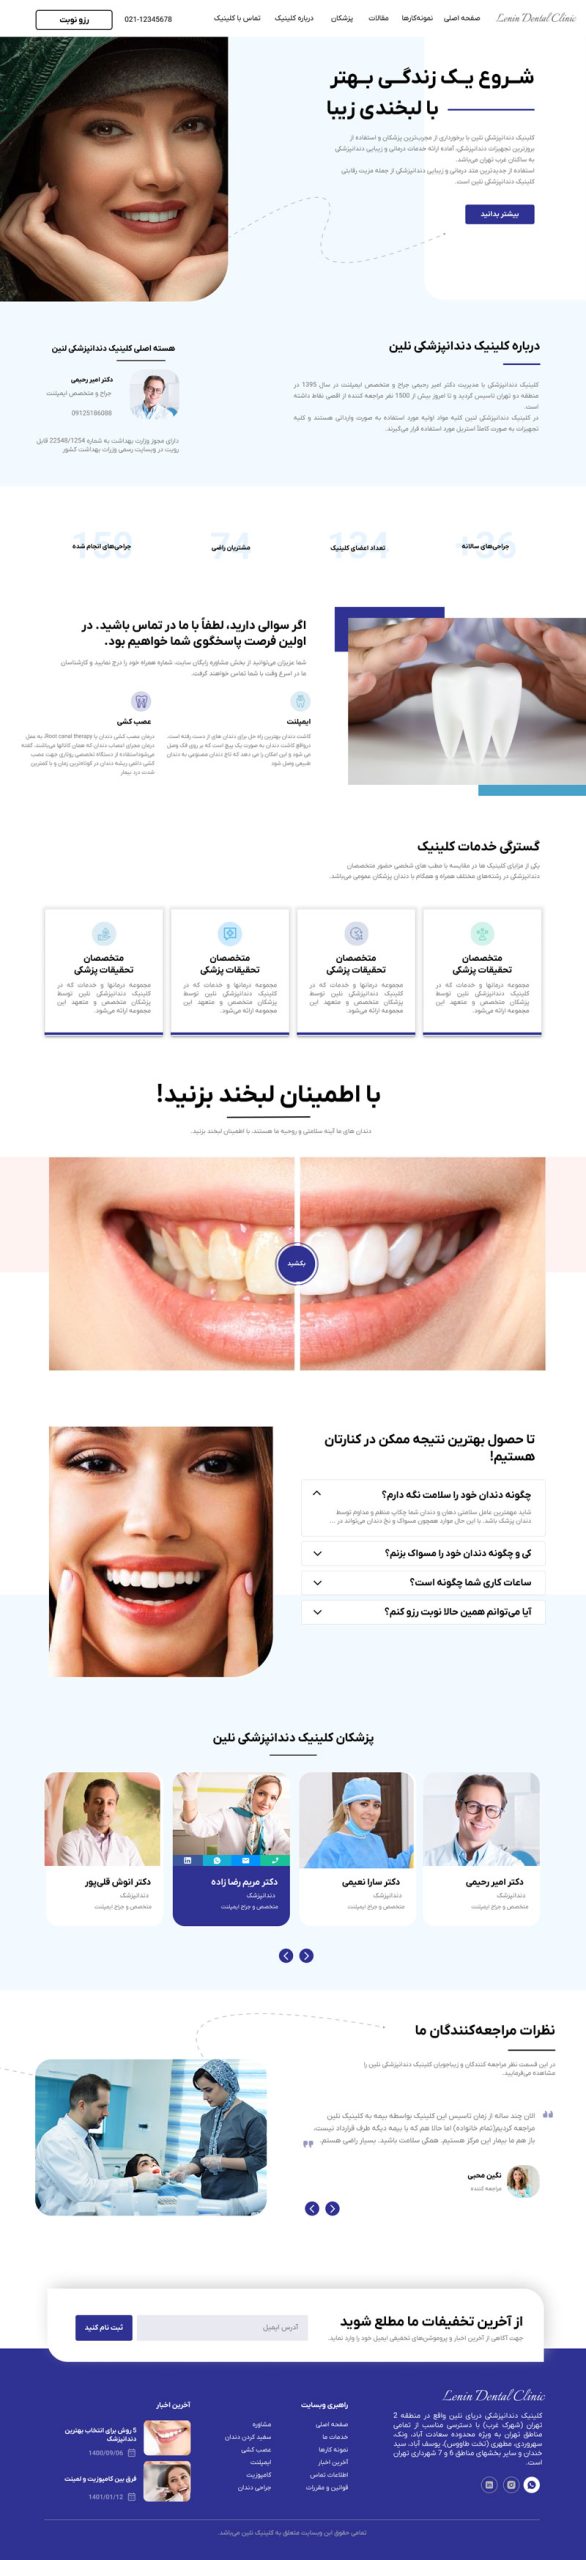 طراحی UI/UX کلینیک دندانپزشکی نلین